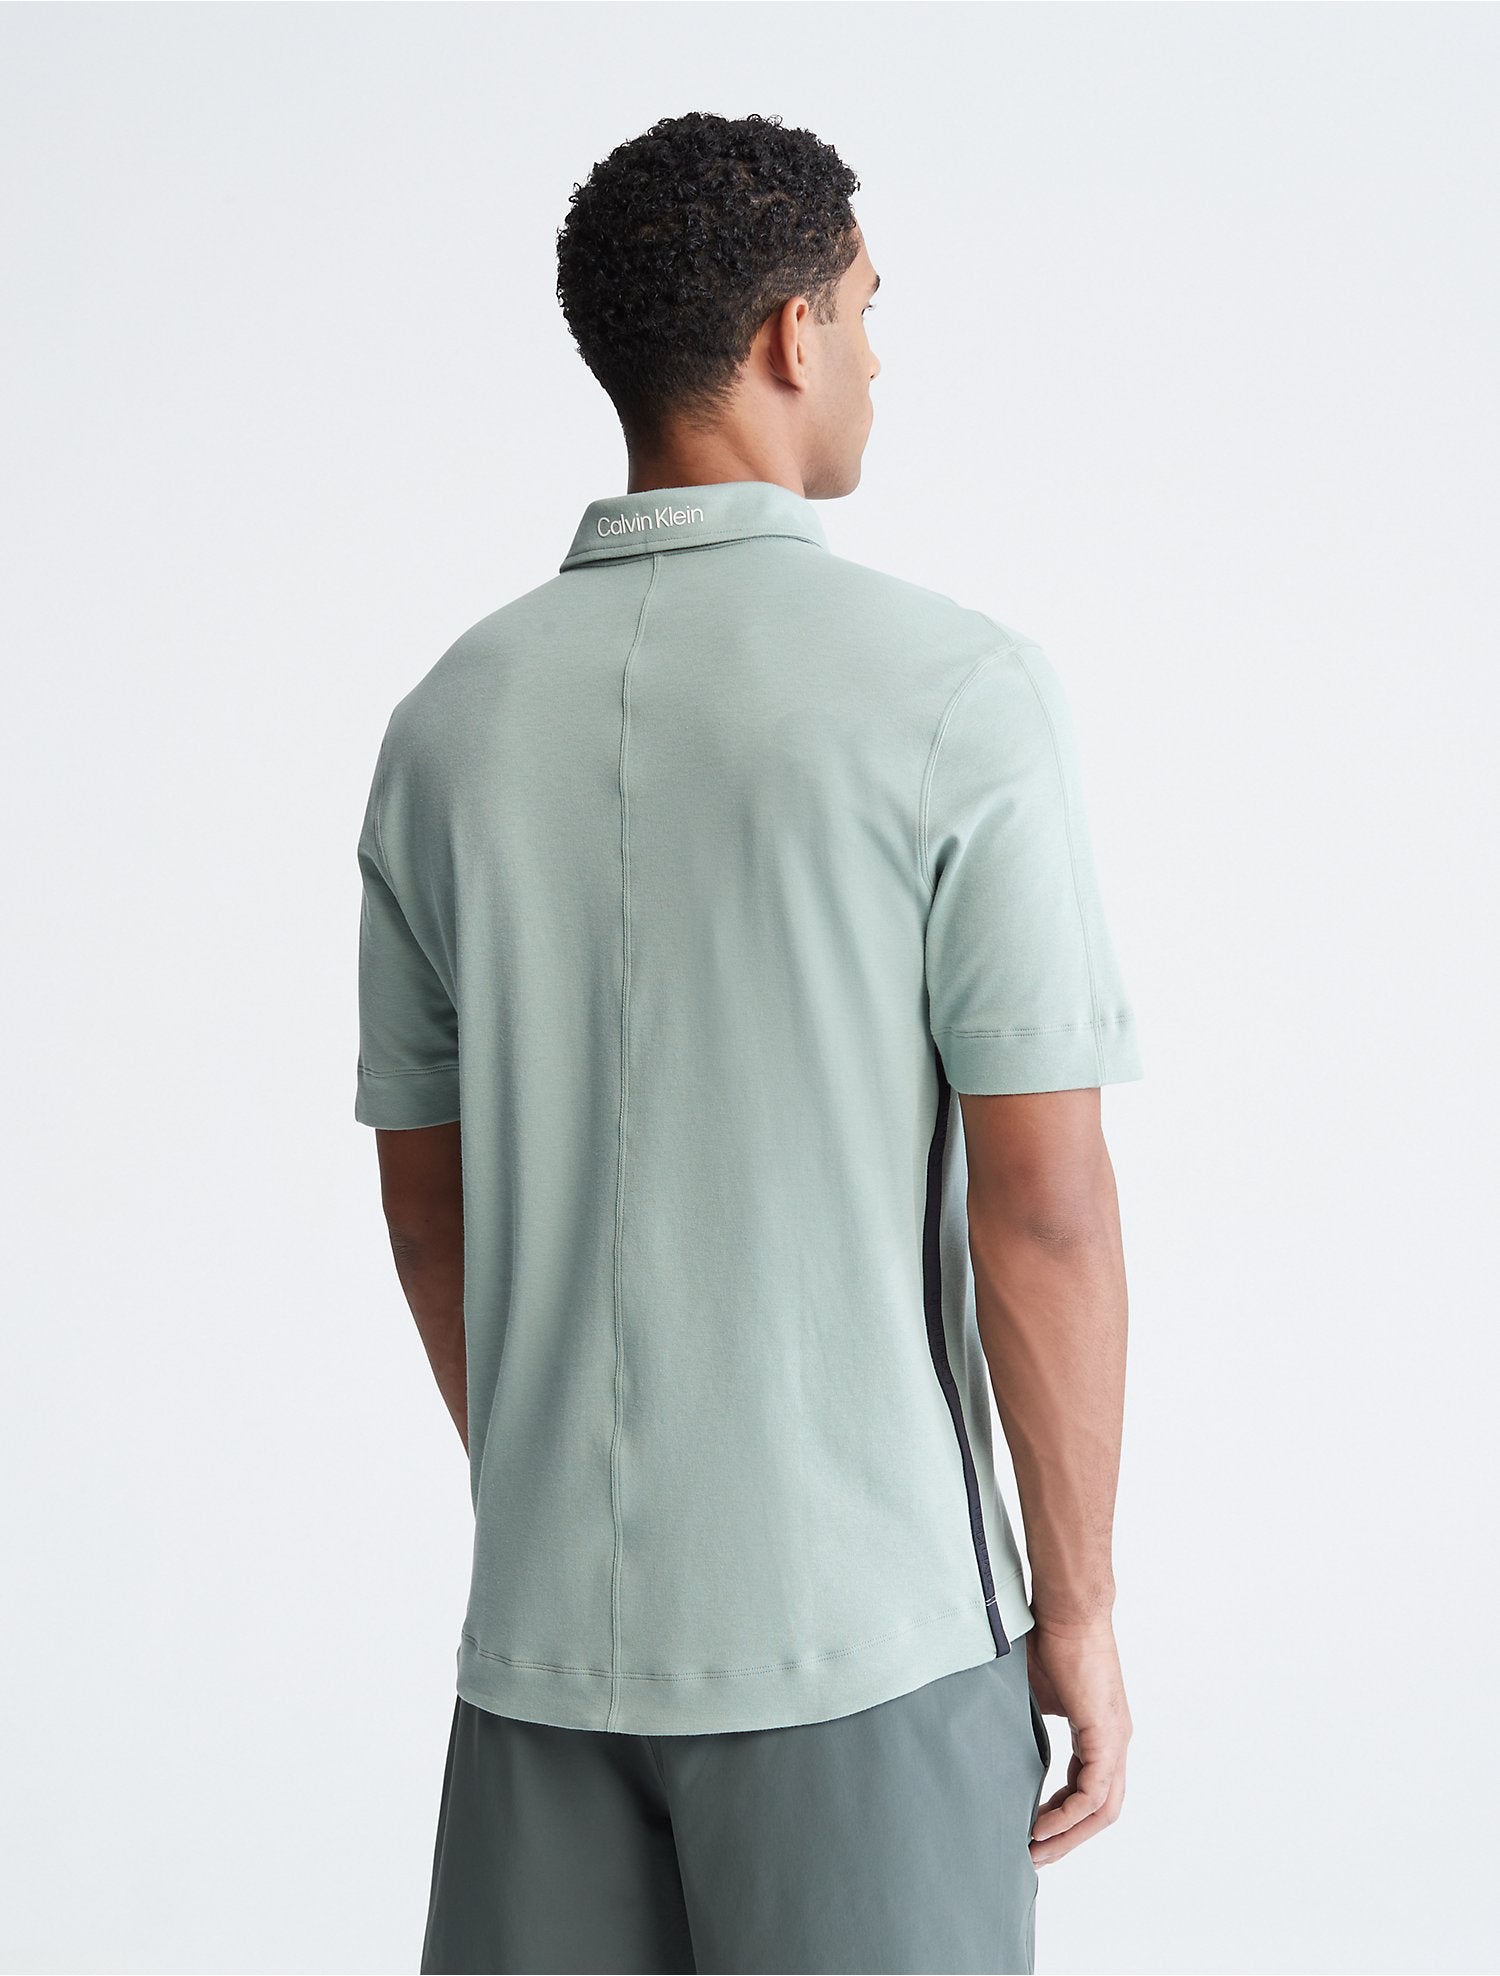 Calvin Klein CK Sport Effect Short Sleeve Polo Shirt - Men